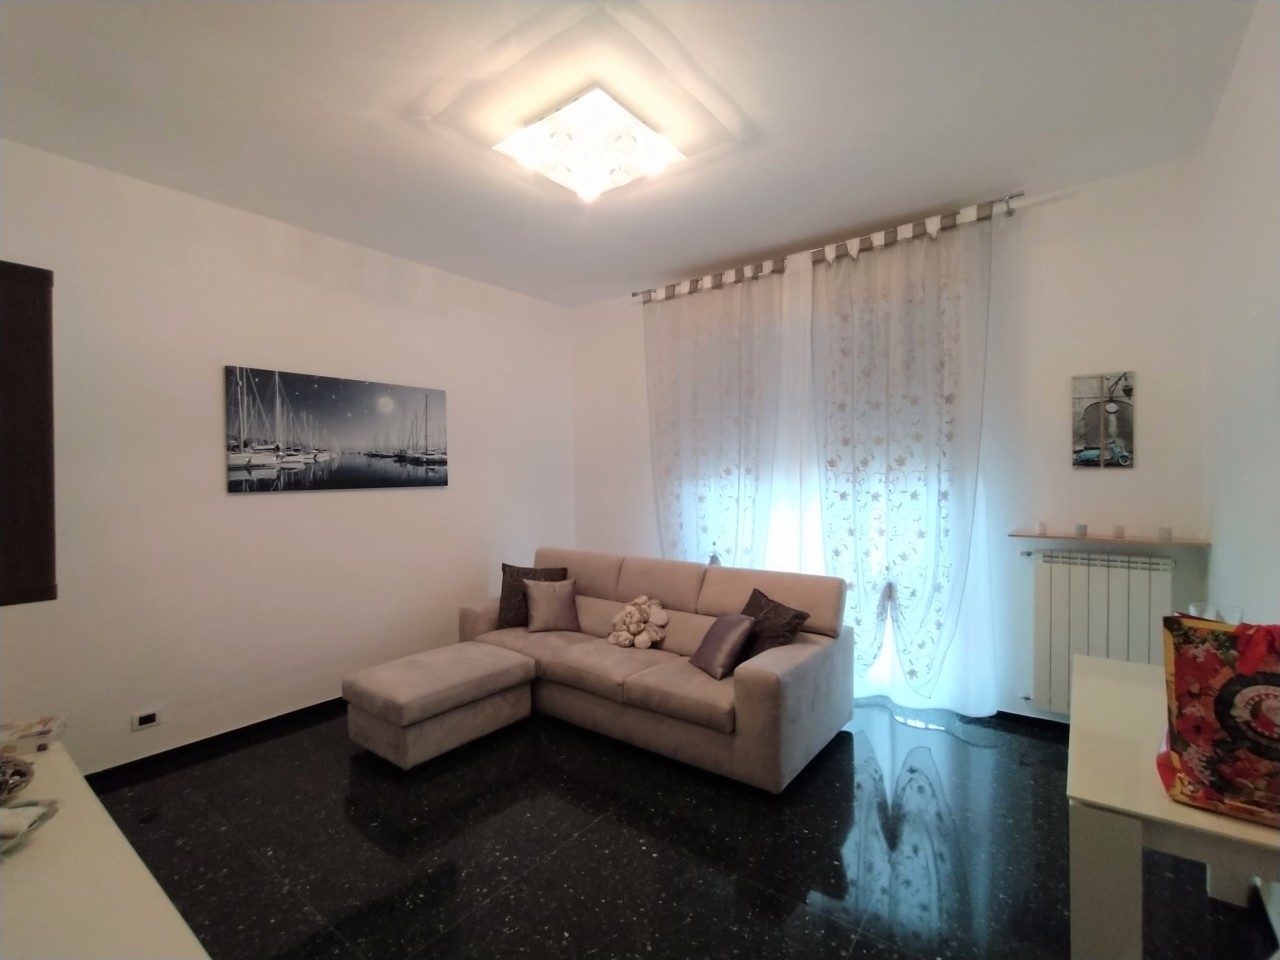 Appartamento in vendita a Savona, 4 locali, prezzo € 150.000 | PortaleAgenzieImmobiliari.it